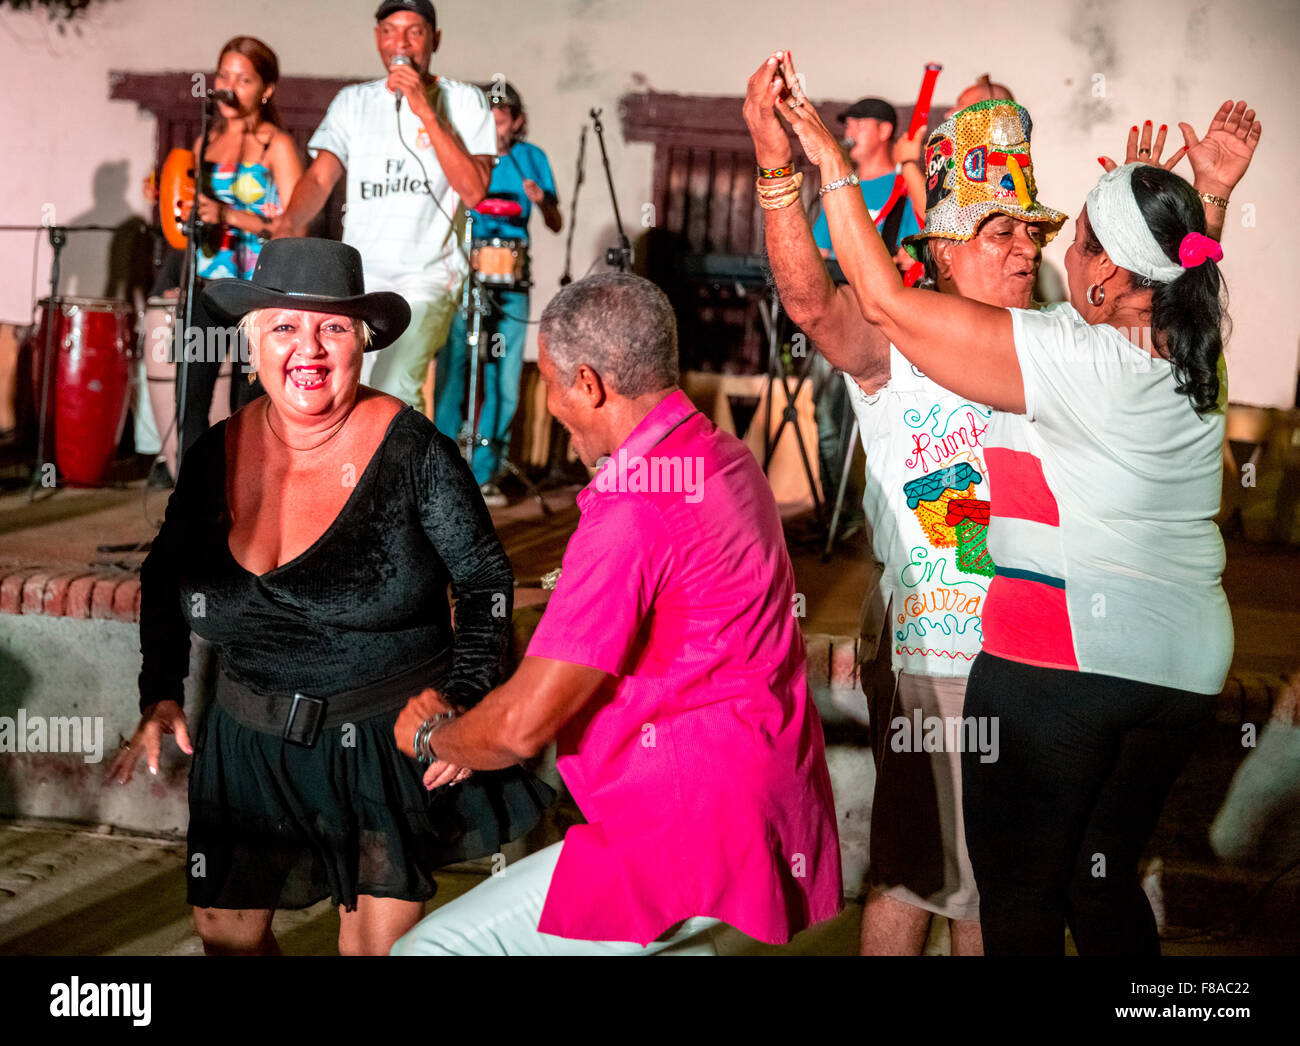 Viejos cubanos en el mercado Salza bailando al ritmo de la música de una banda en vivo, Trinidad, Cuba, Sancti Spíritus, Norteamérica Foto de stock